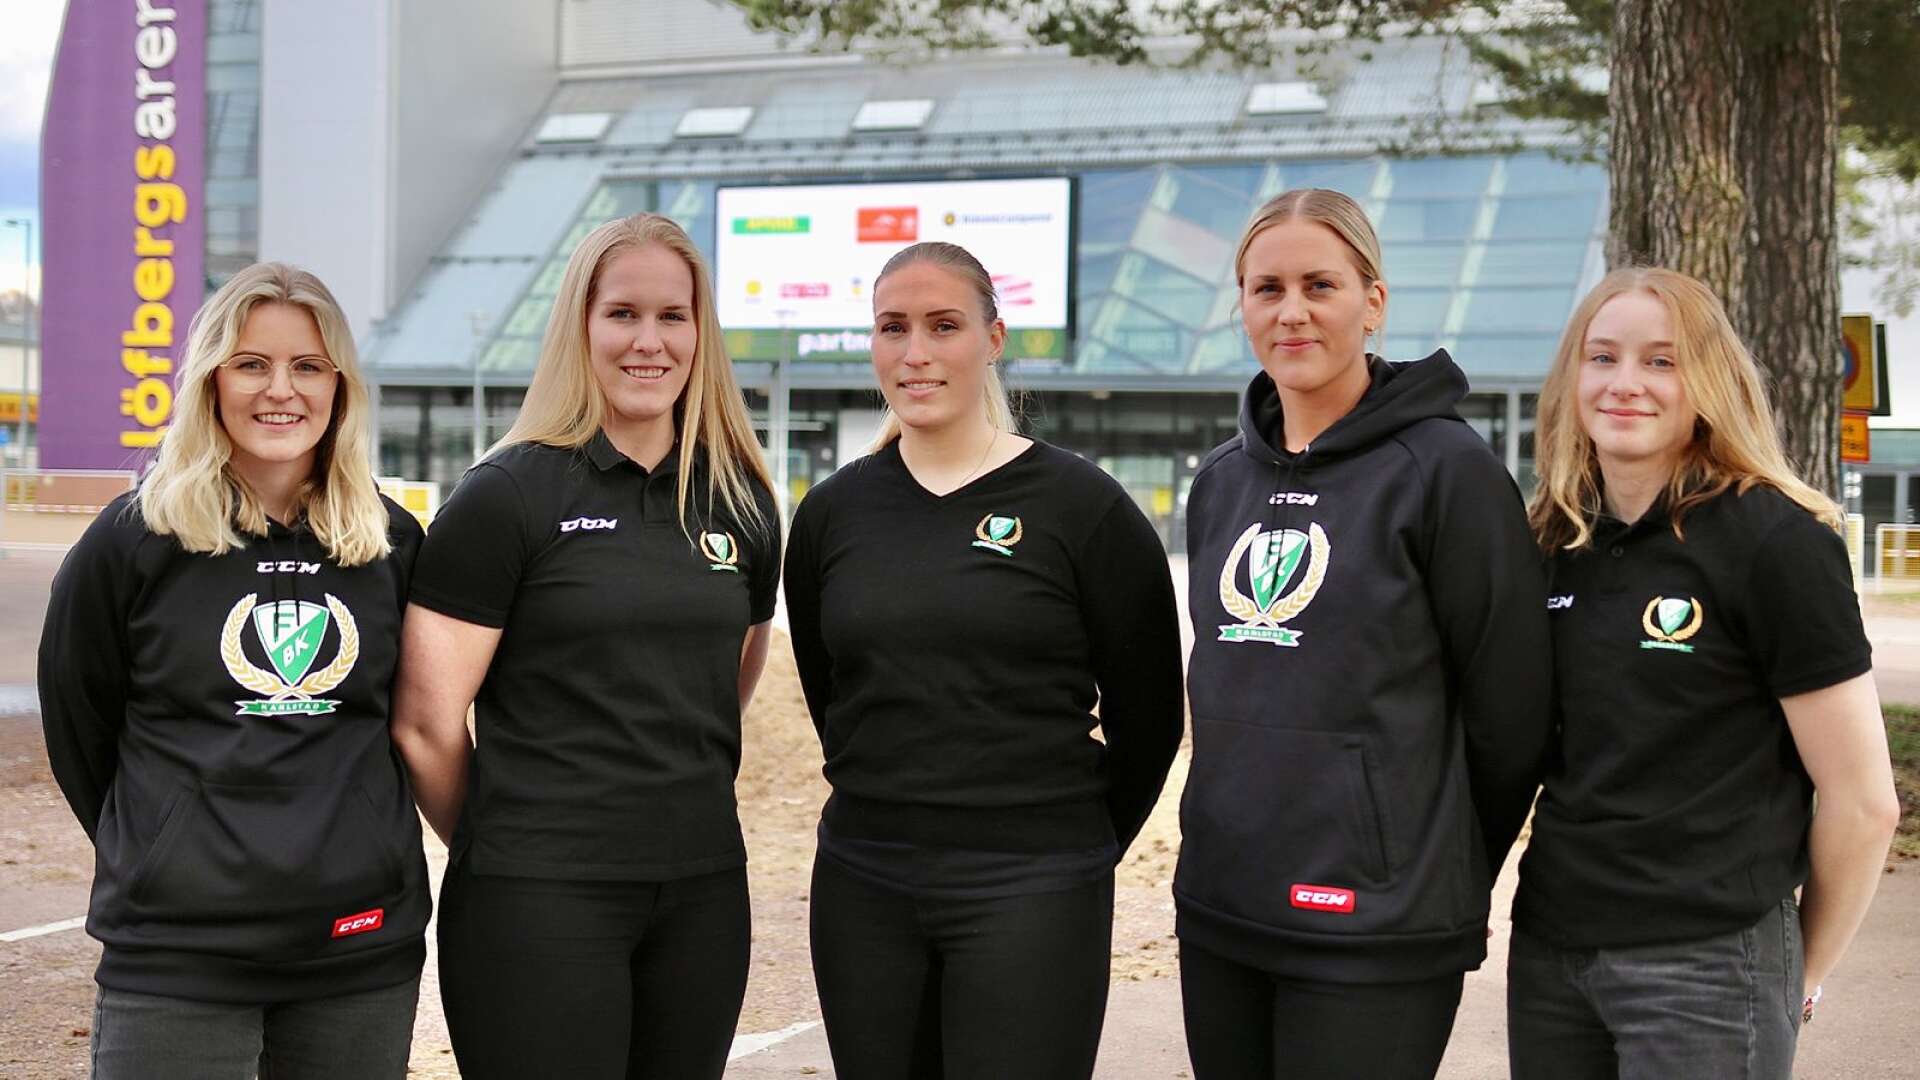 Från vänster: Julia Pettersson, Elin Benn, Silje Holös, Jennifer Axelsson och Mimmi Gill.